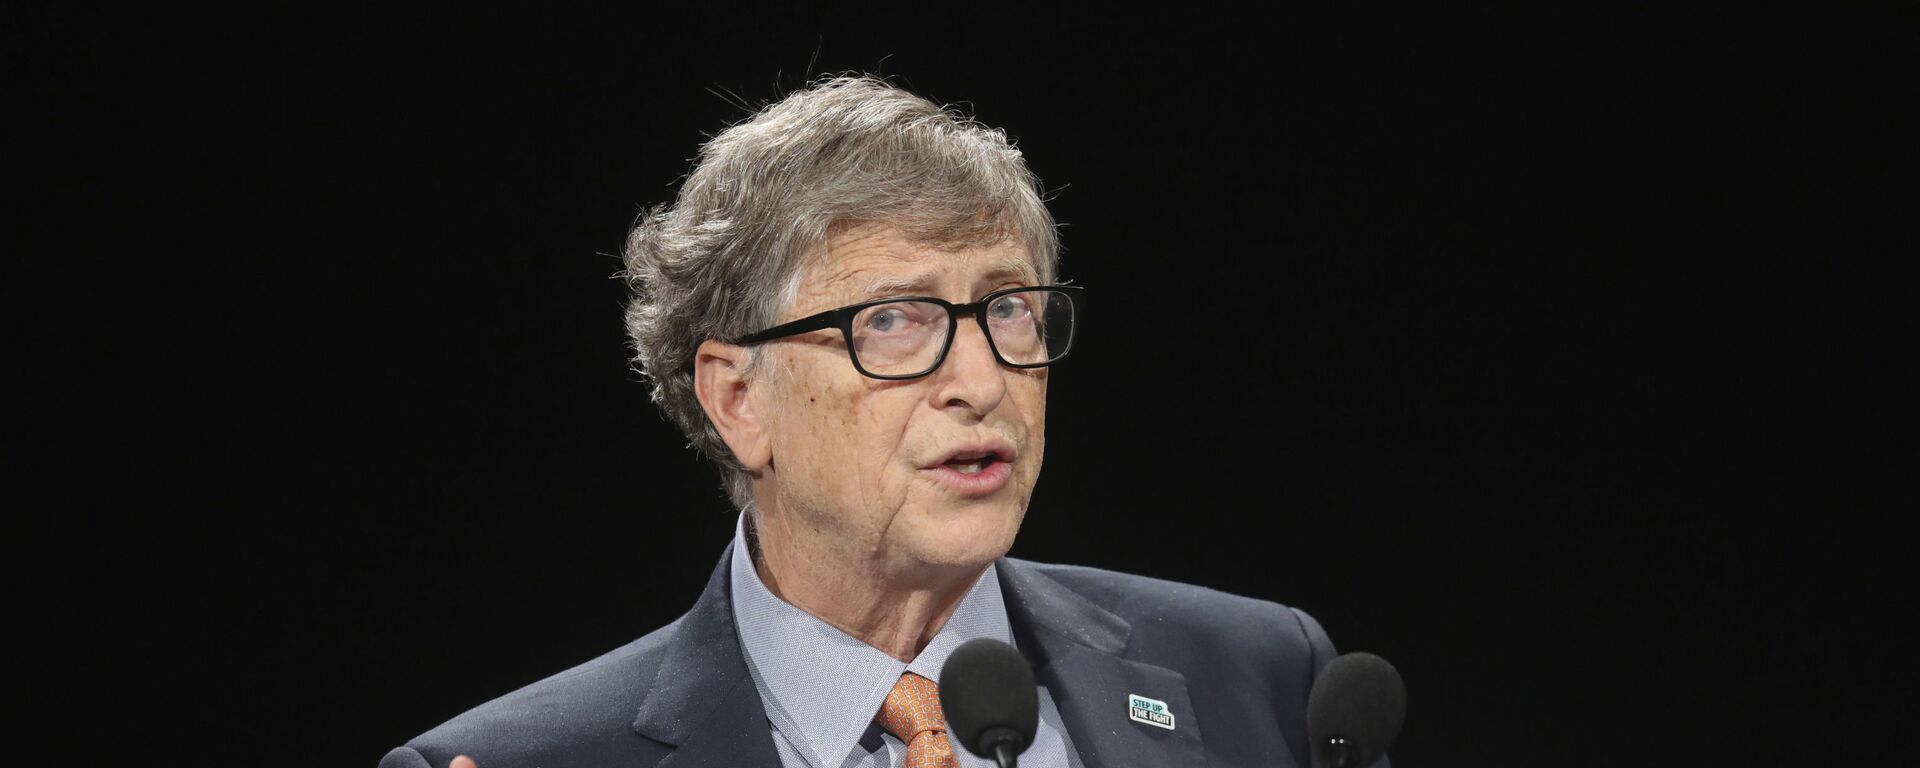 Bill Gates, multimillonario y filántropo estadounidense - Sputnik Mundo, 1920, 02.06.2021